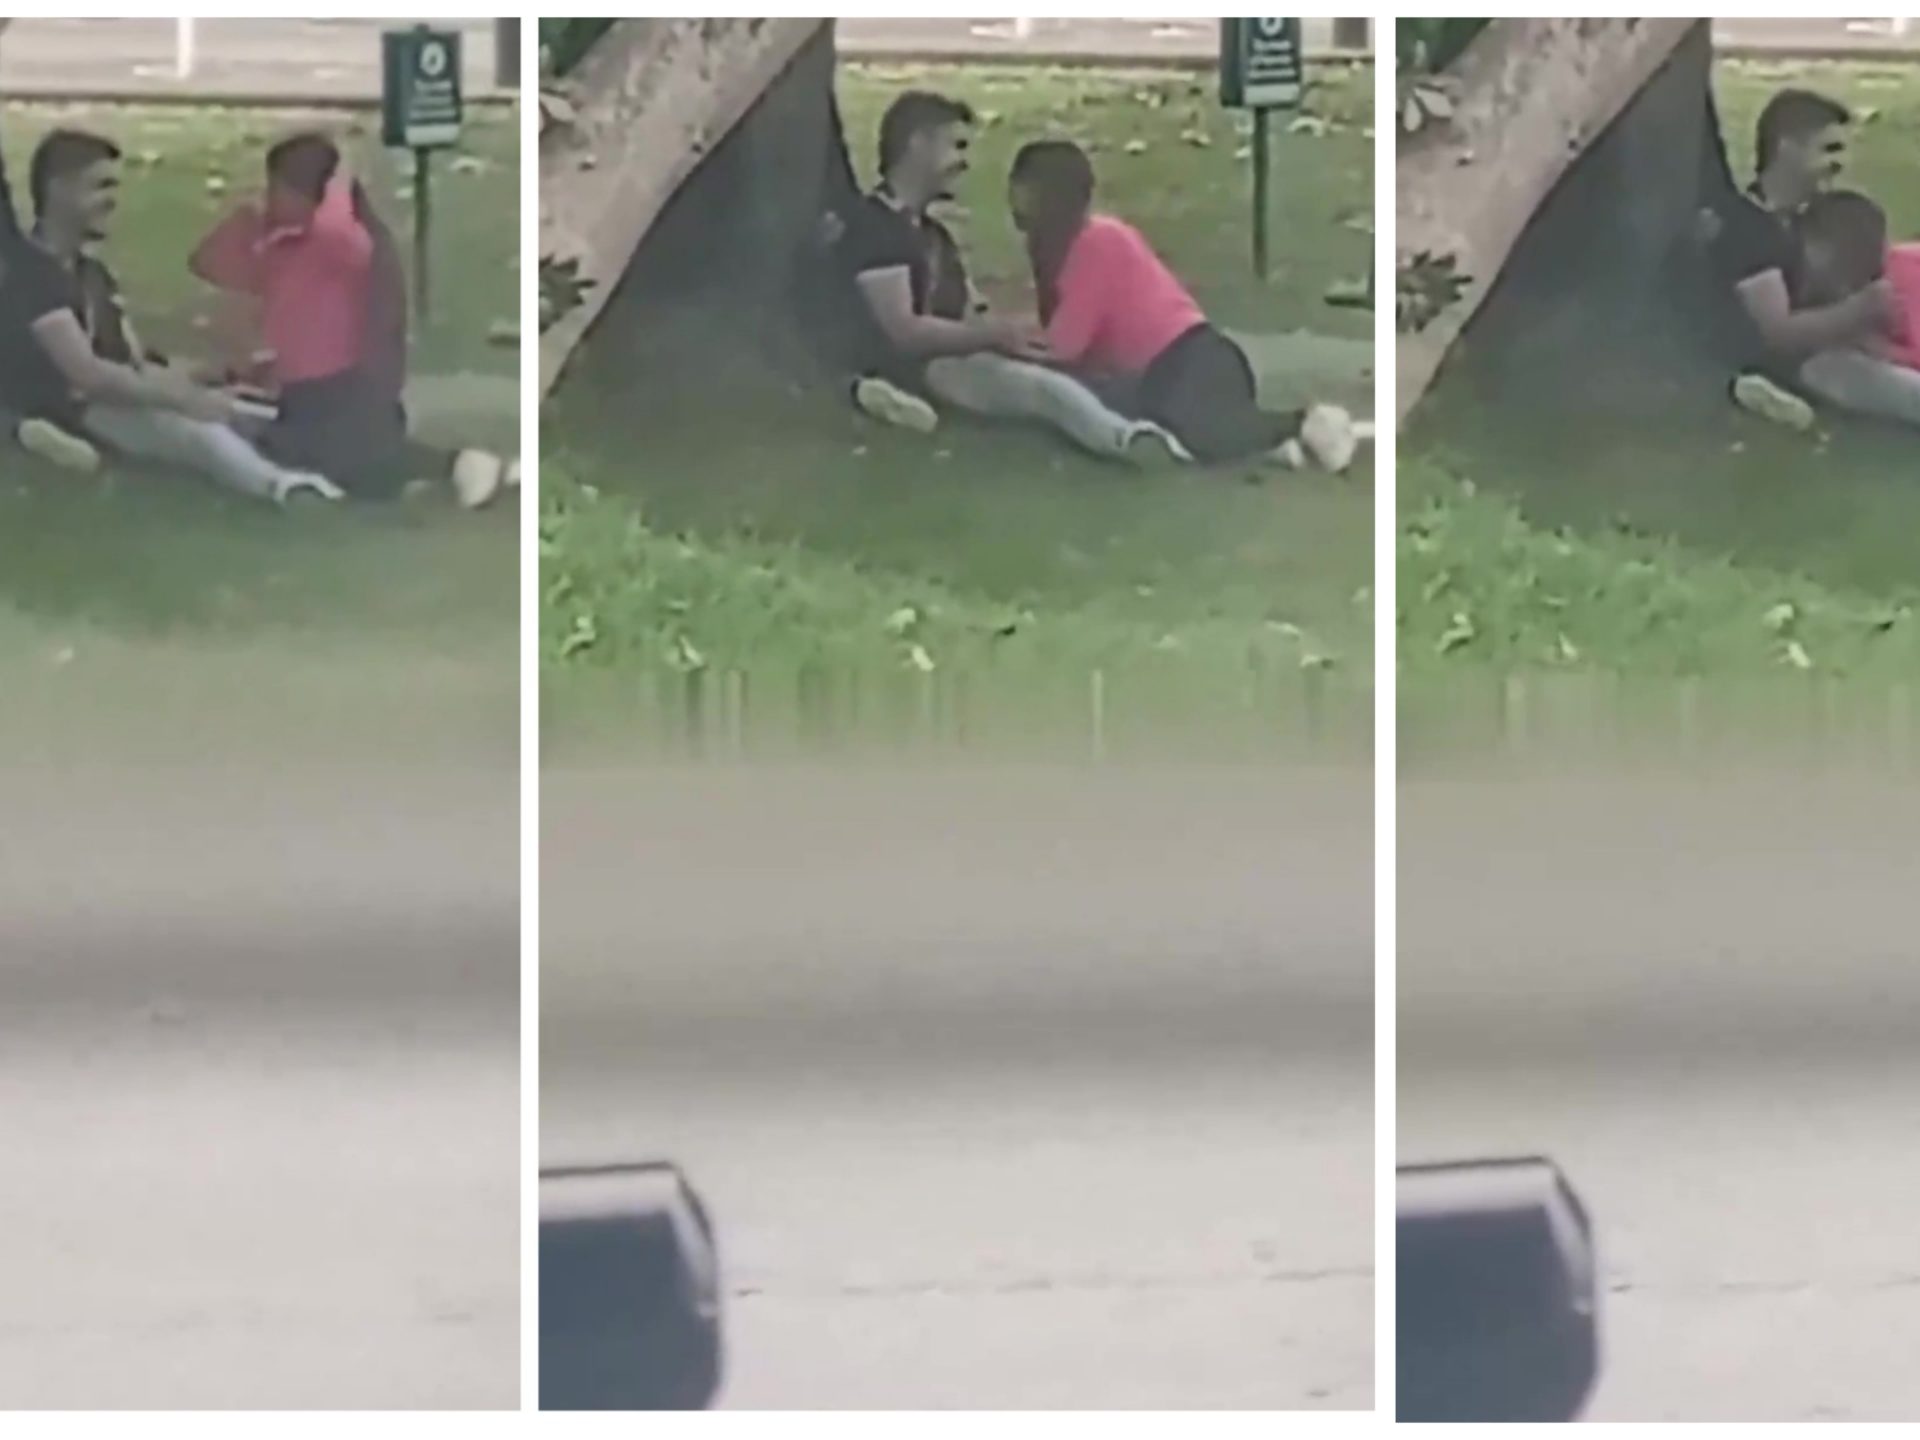 Sesso al parco davanti a tutti, ma la polizia non può intervenire: video diventa virale